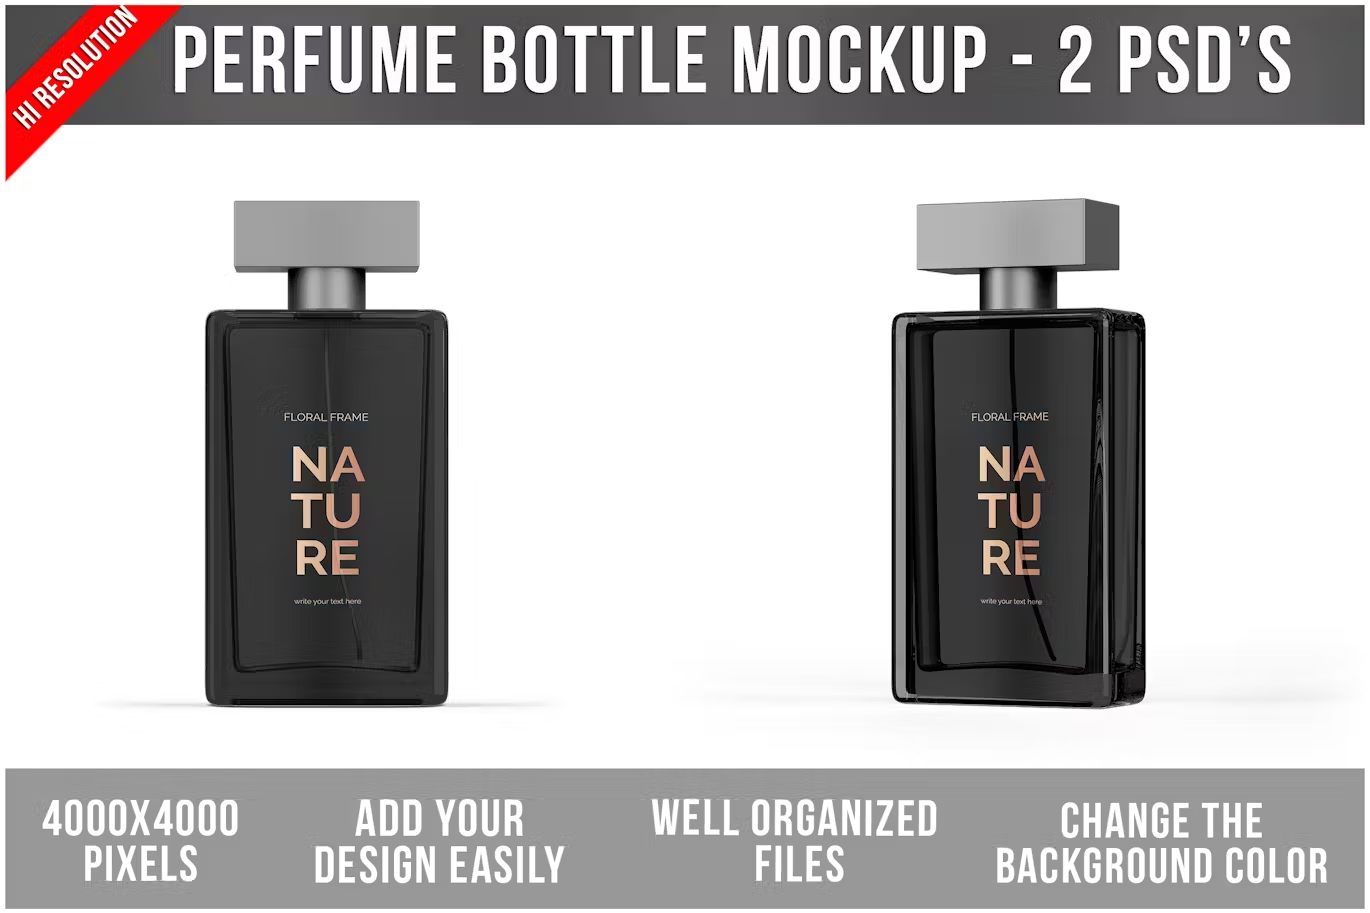 6147 香水瓶模型包装PSD样机素材-Perfume Bottle Mockup